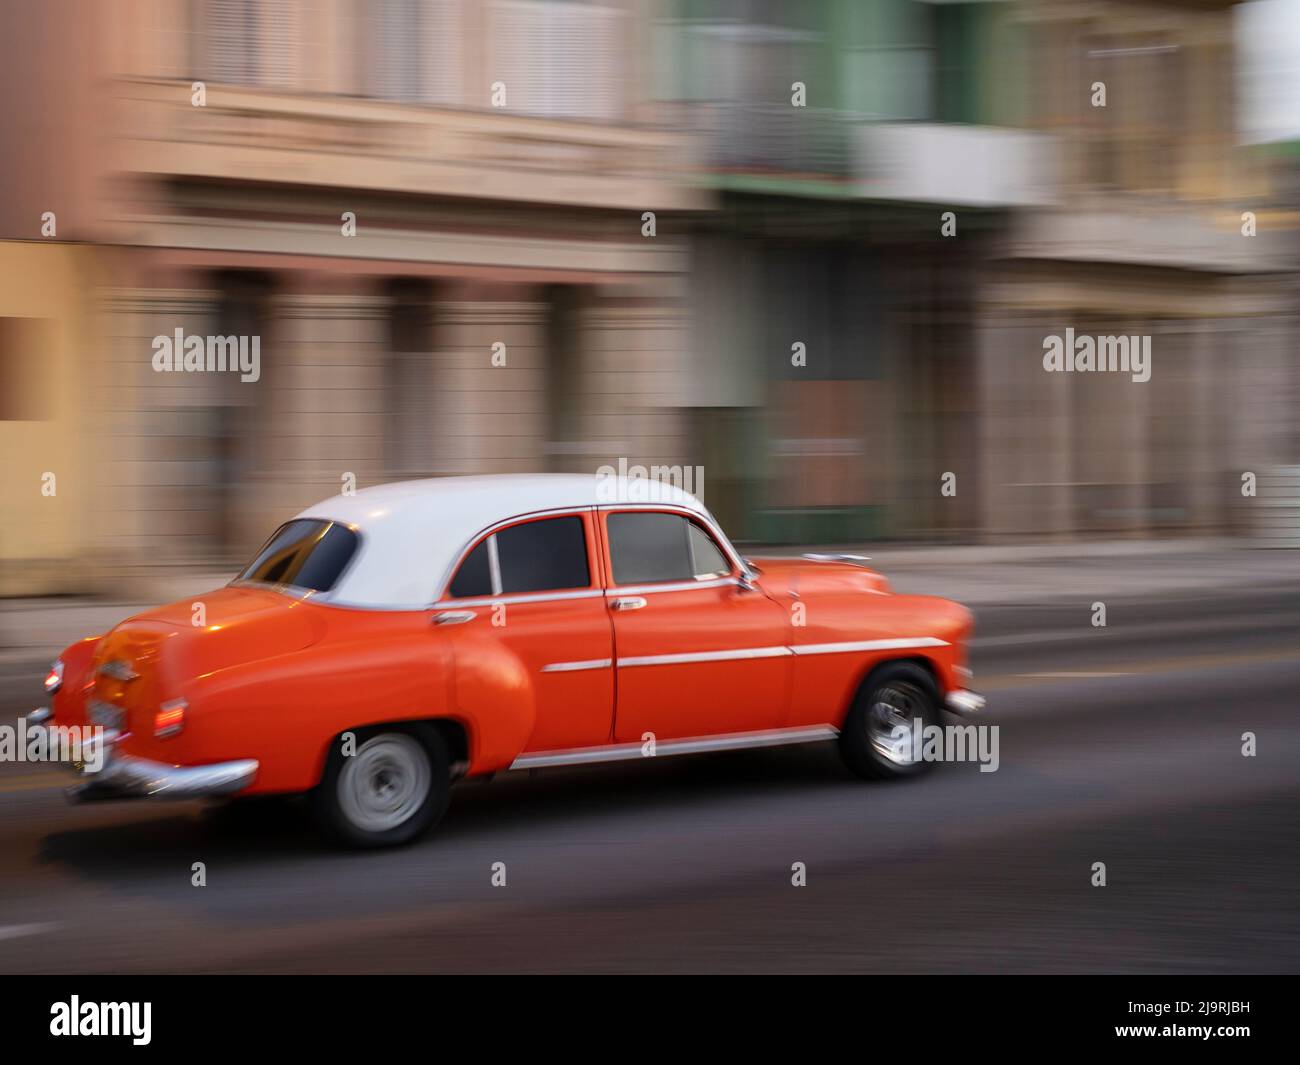 Cuba, La Habana, Habana Vieja, Patrimonio de la Humanidad de la UNESCO, clásico coche rojo en movimiento Foto de stock